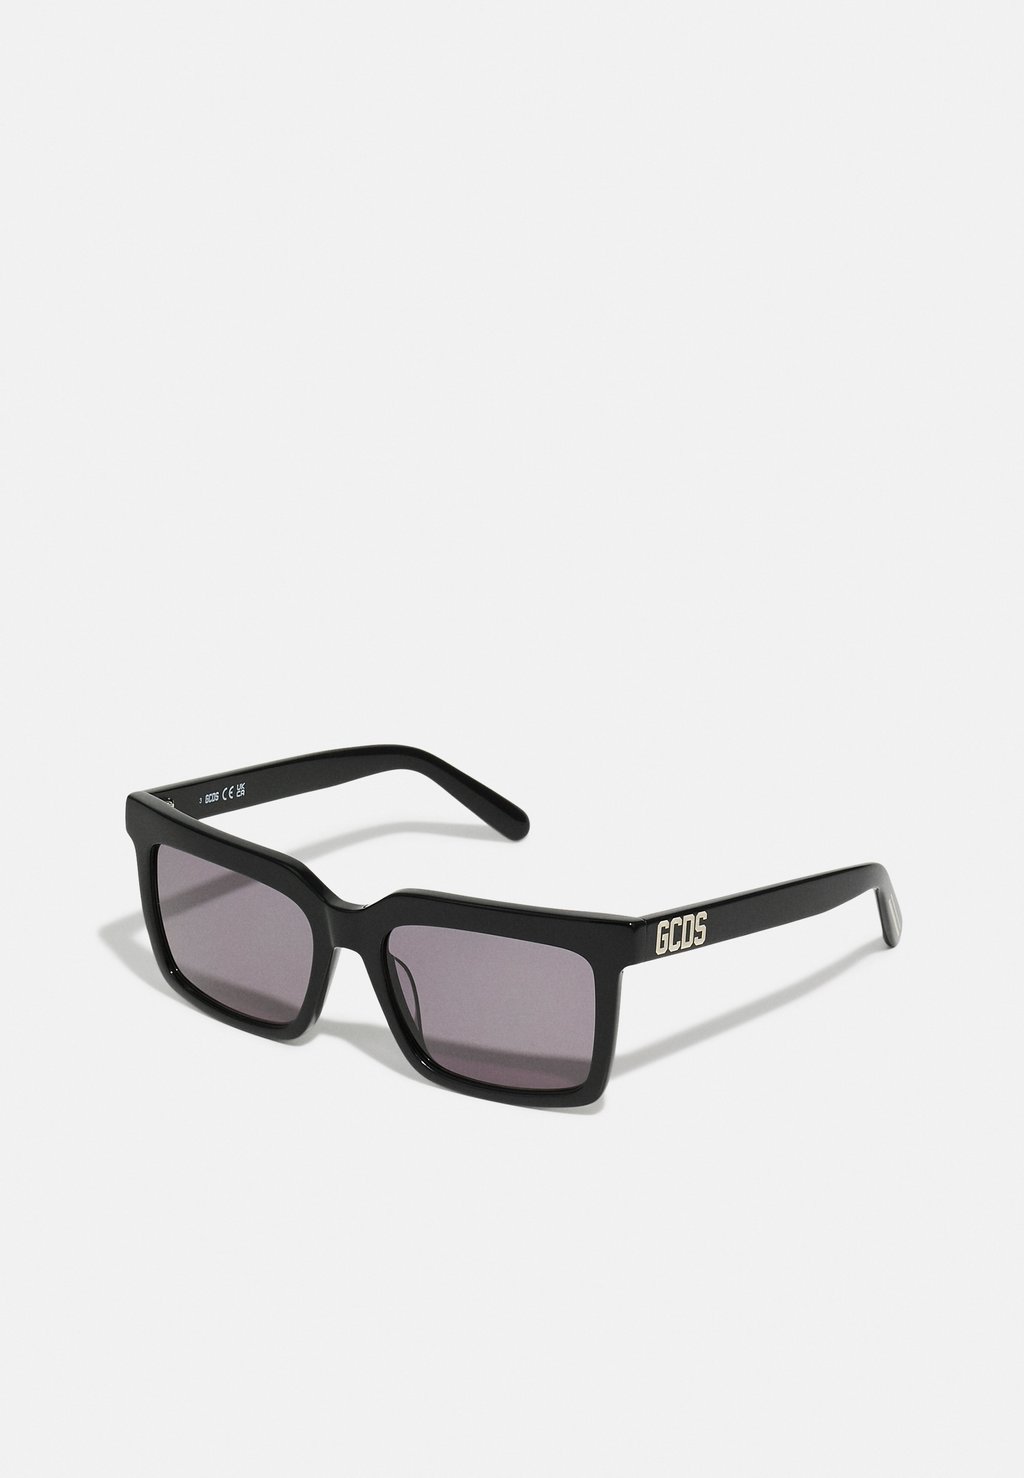 Солнцезащитные очки Unisex GCDS, цвет shiny black